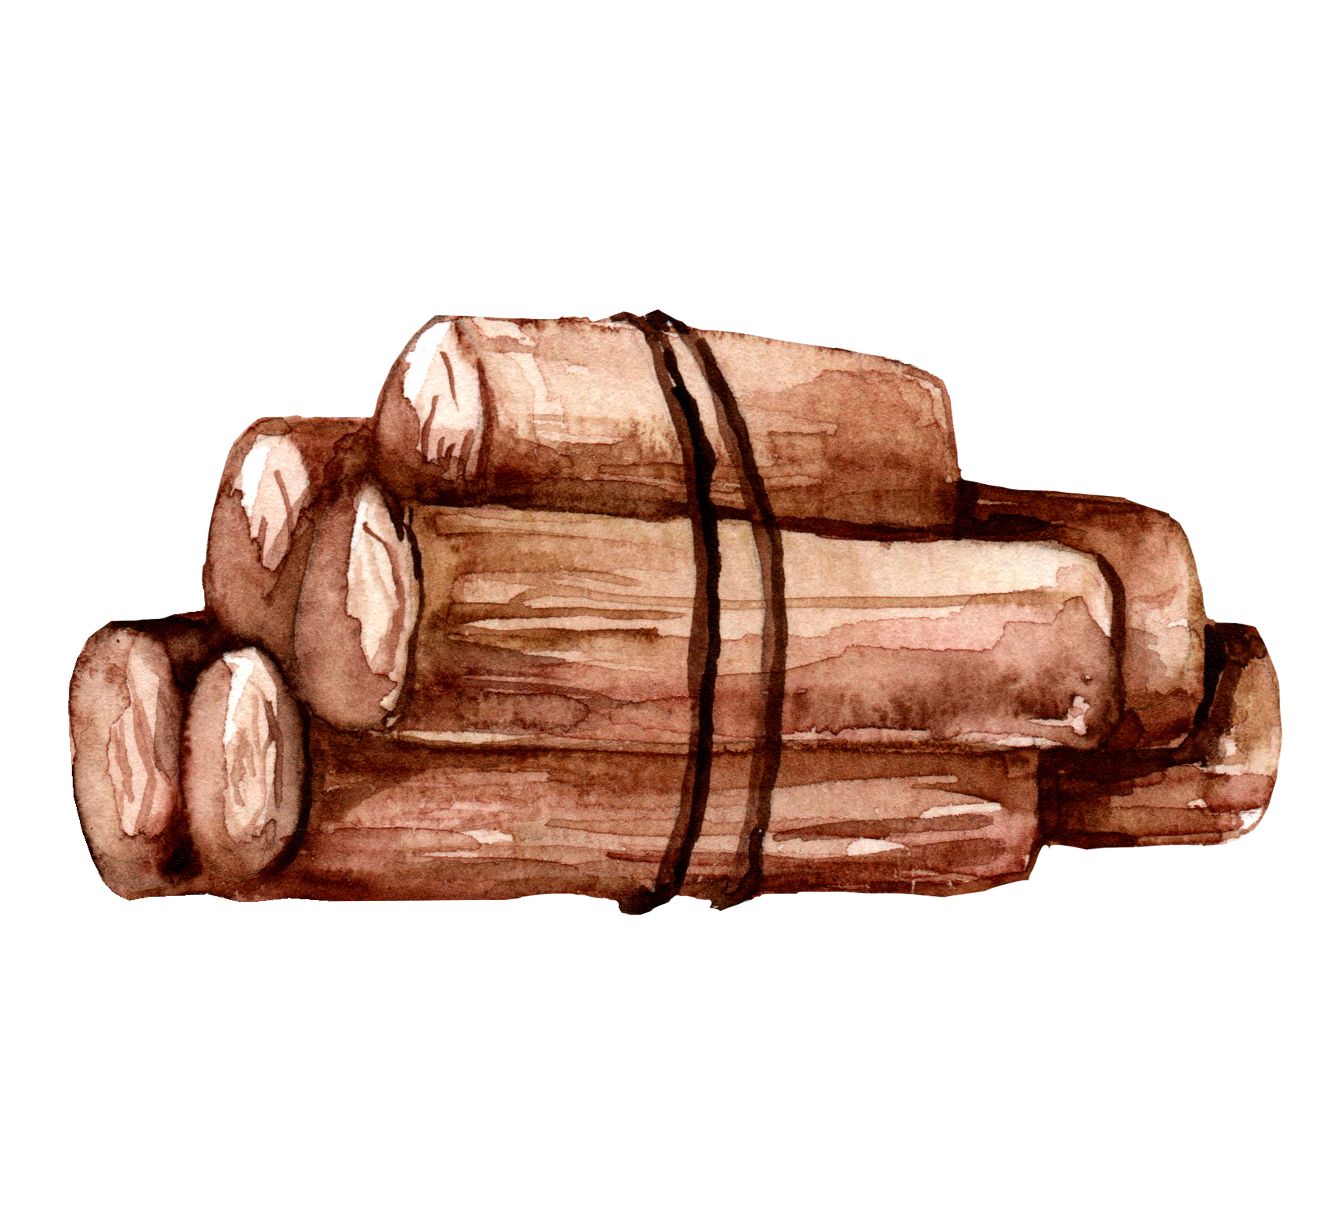 Ilustração de troncos de árvores cortados.